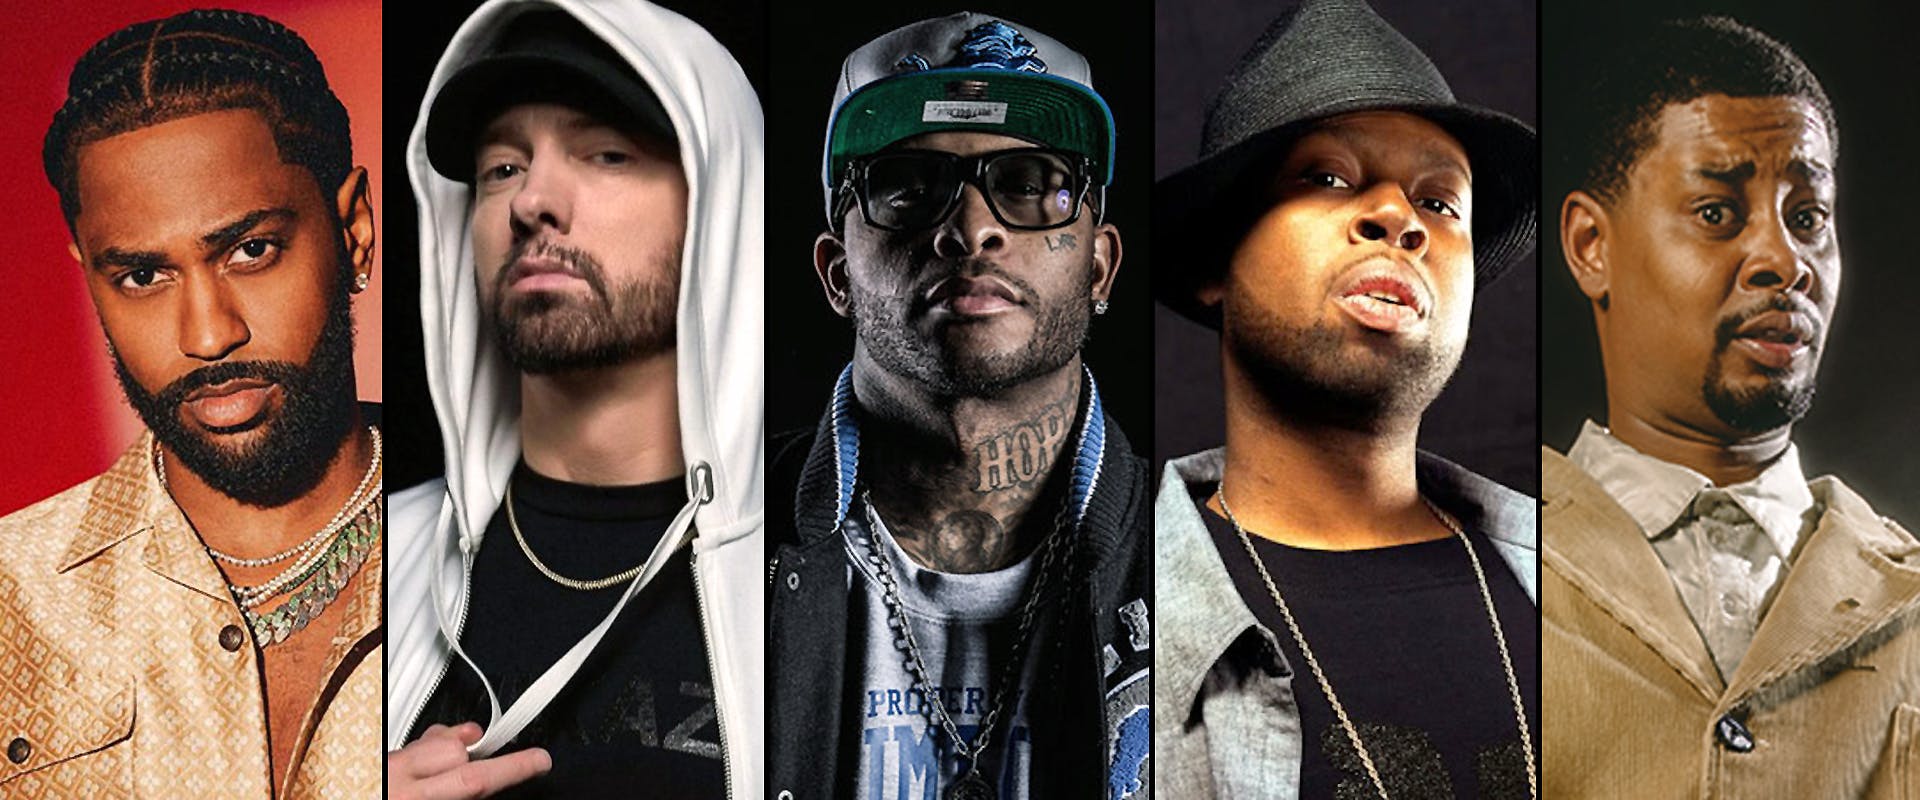 Big Sean, Eminem, J. Dilla, Royce and more